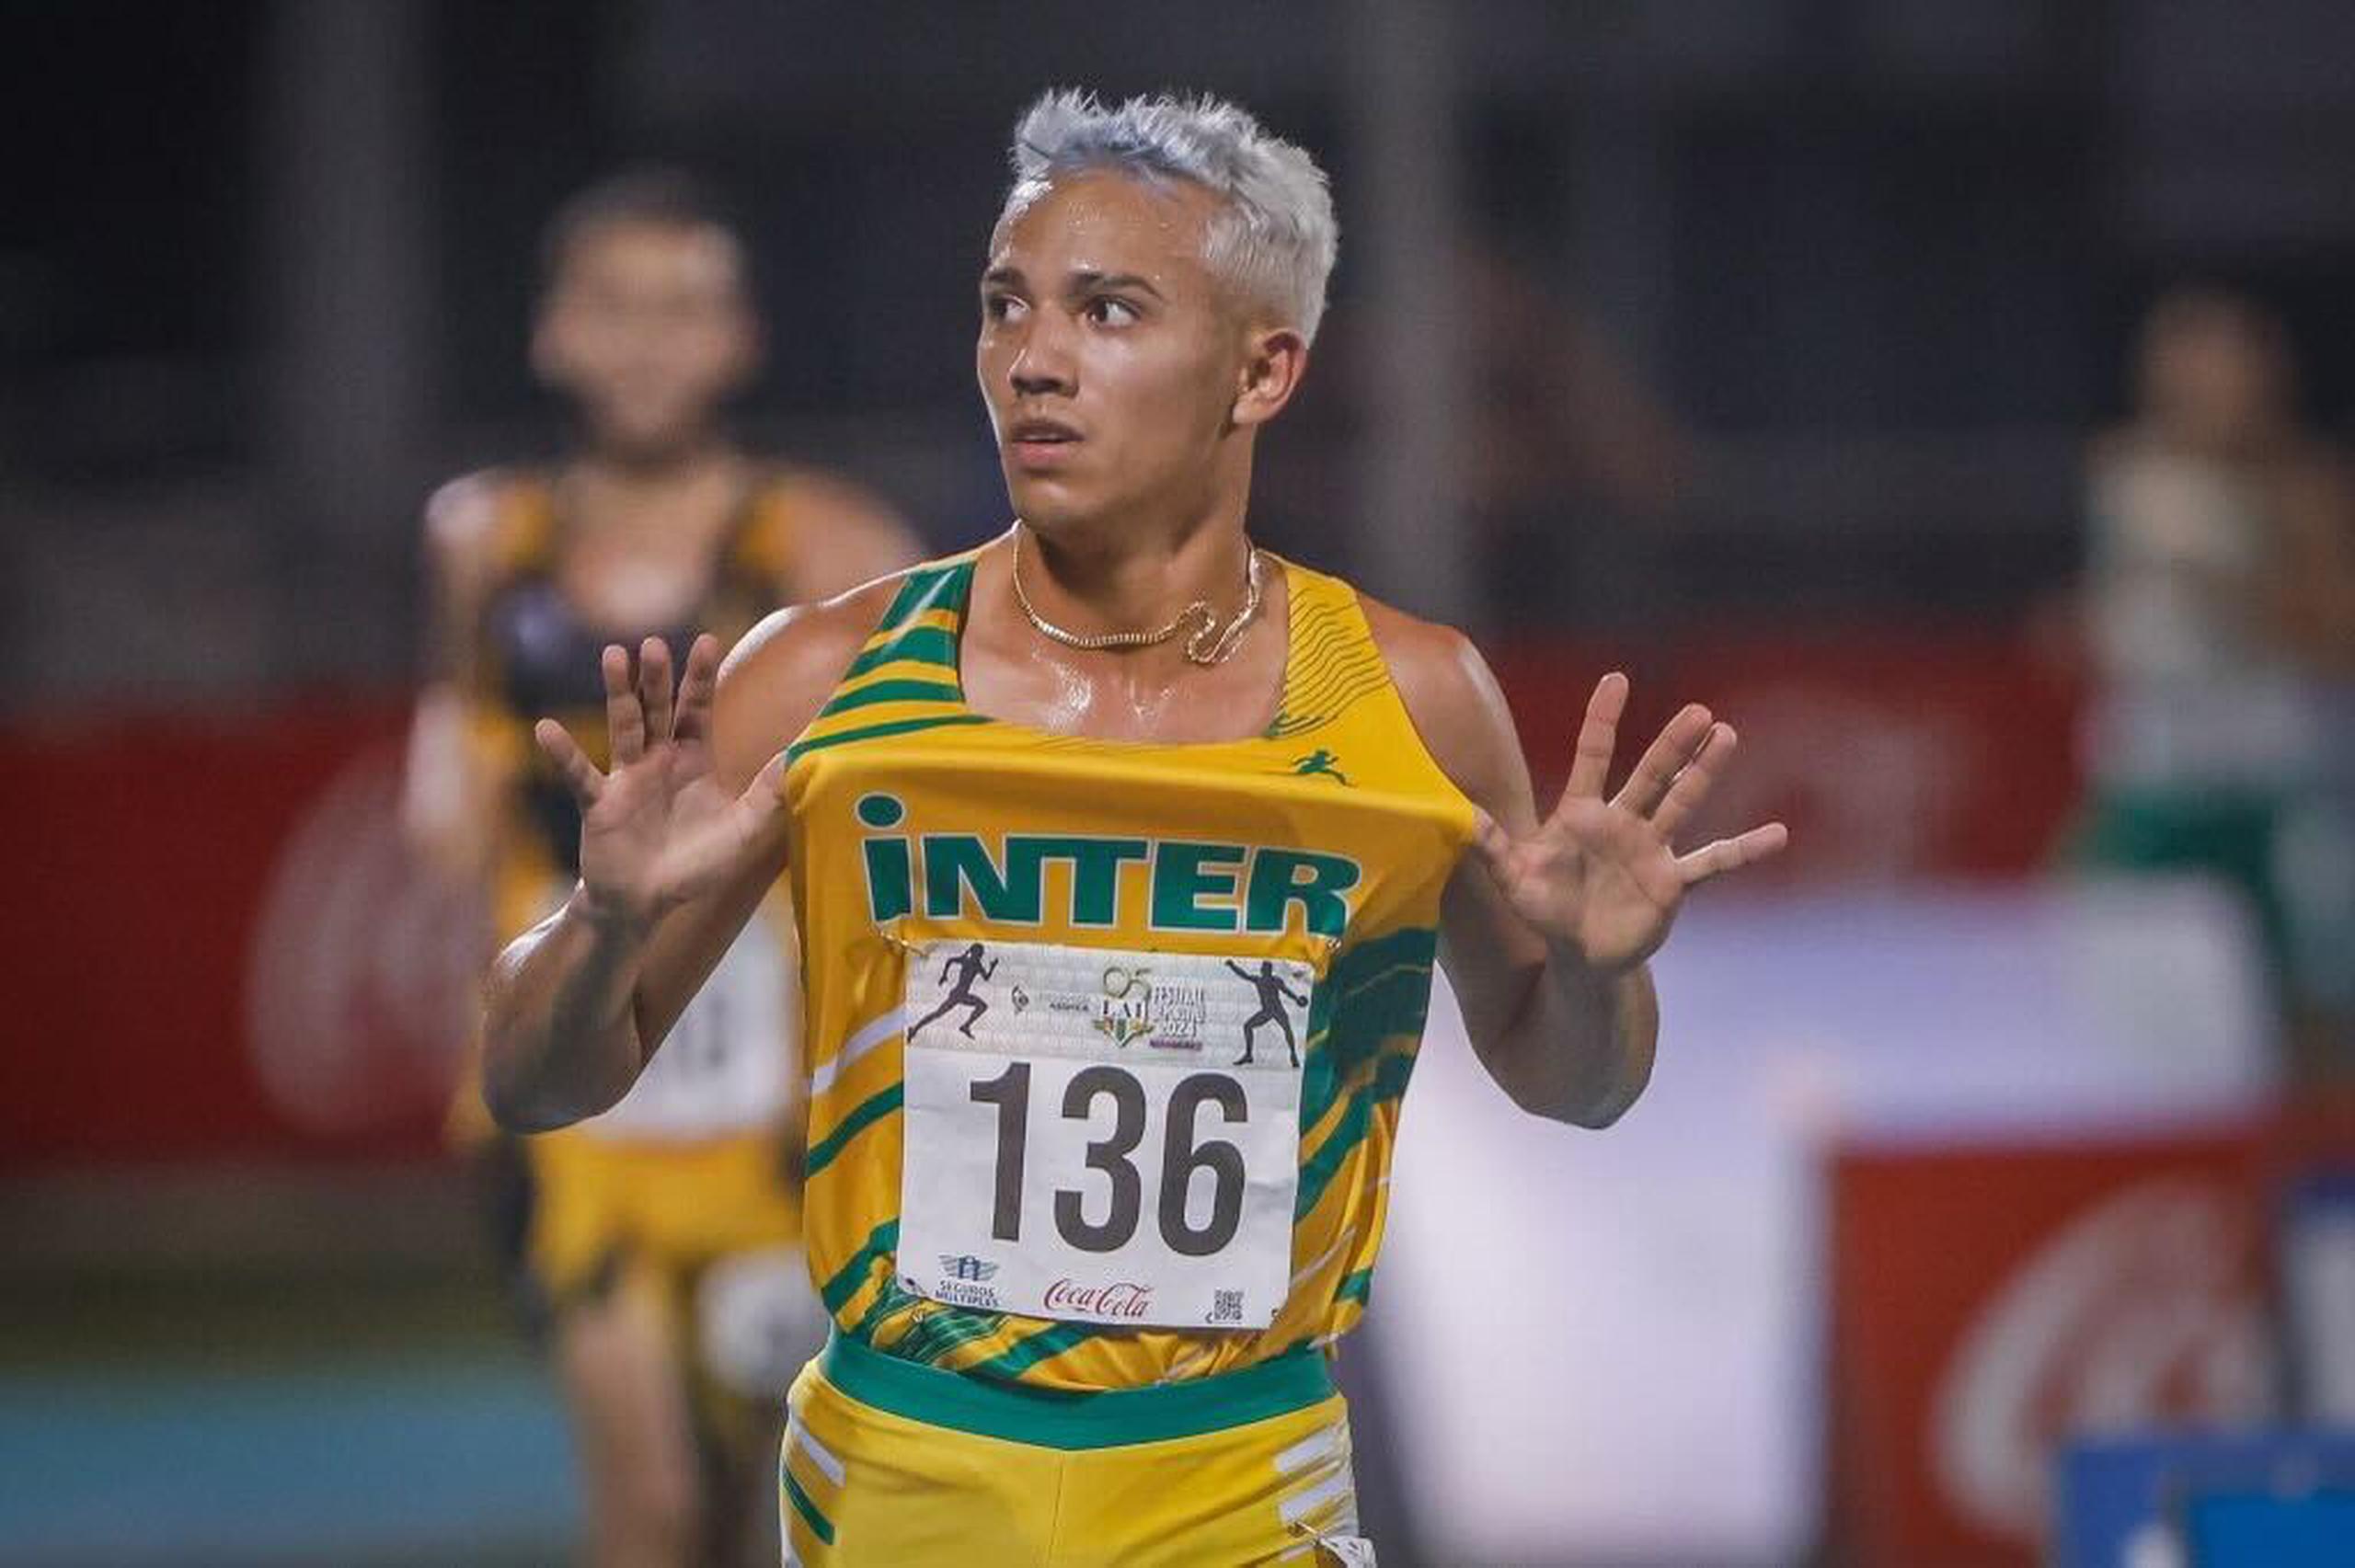 El fondista barranquiteño Héctor Pagán, de la Universidad Interamericana de Puerto Rico, conquistó por tercer año consecutivo los 5,000 metros en las Justas de Atletismo de la LAI.